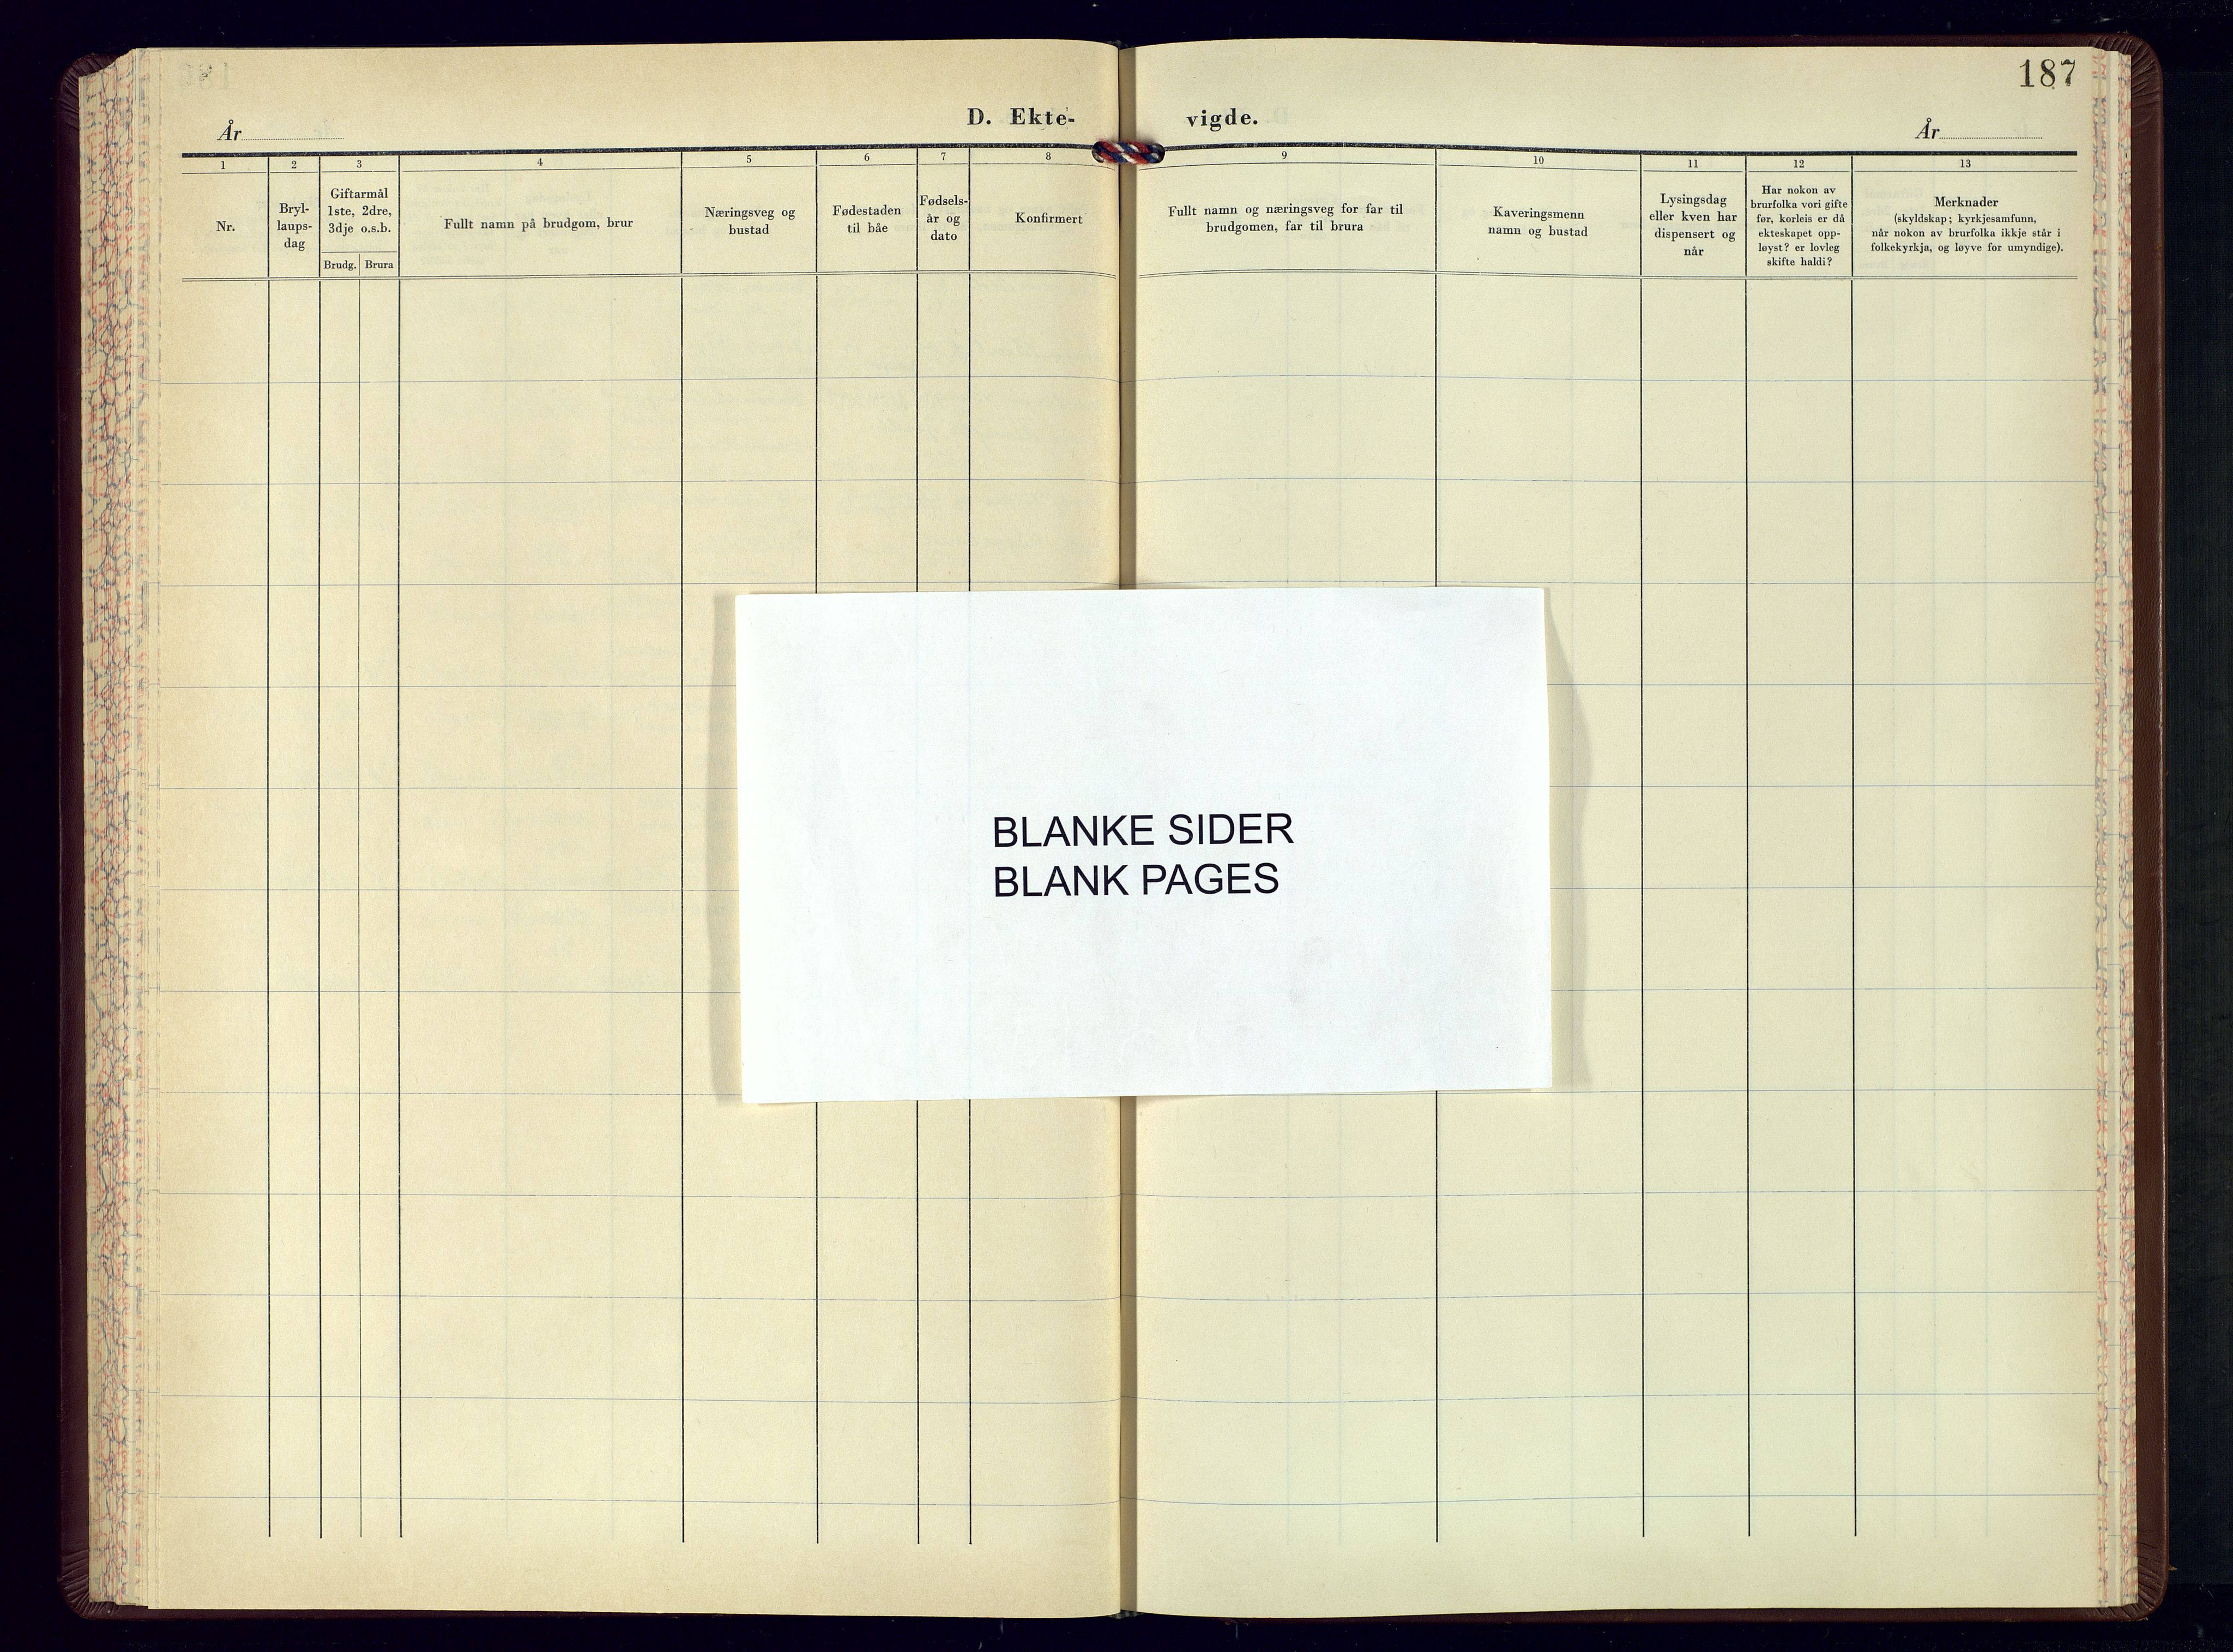 Bjelland sokneprestkontor, SAK/1111-0005/F/Fb/Fba/L0007: Parish register (copy) no. B-7, 1956-1977